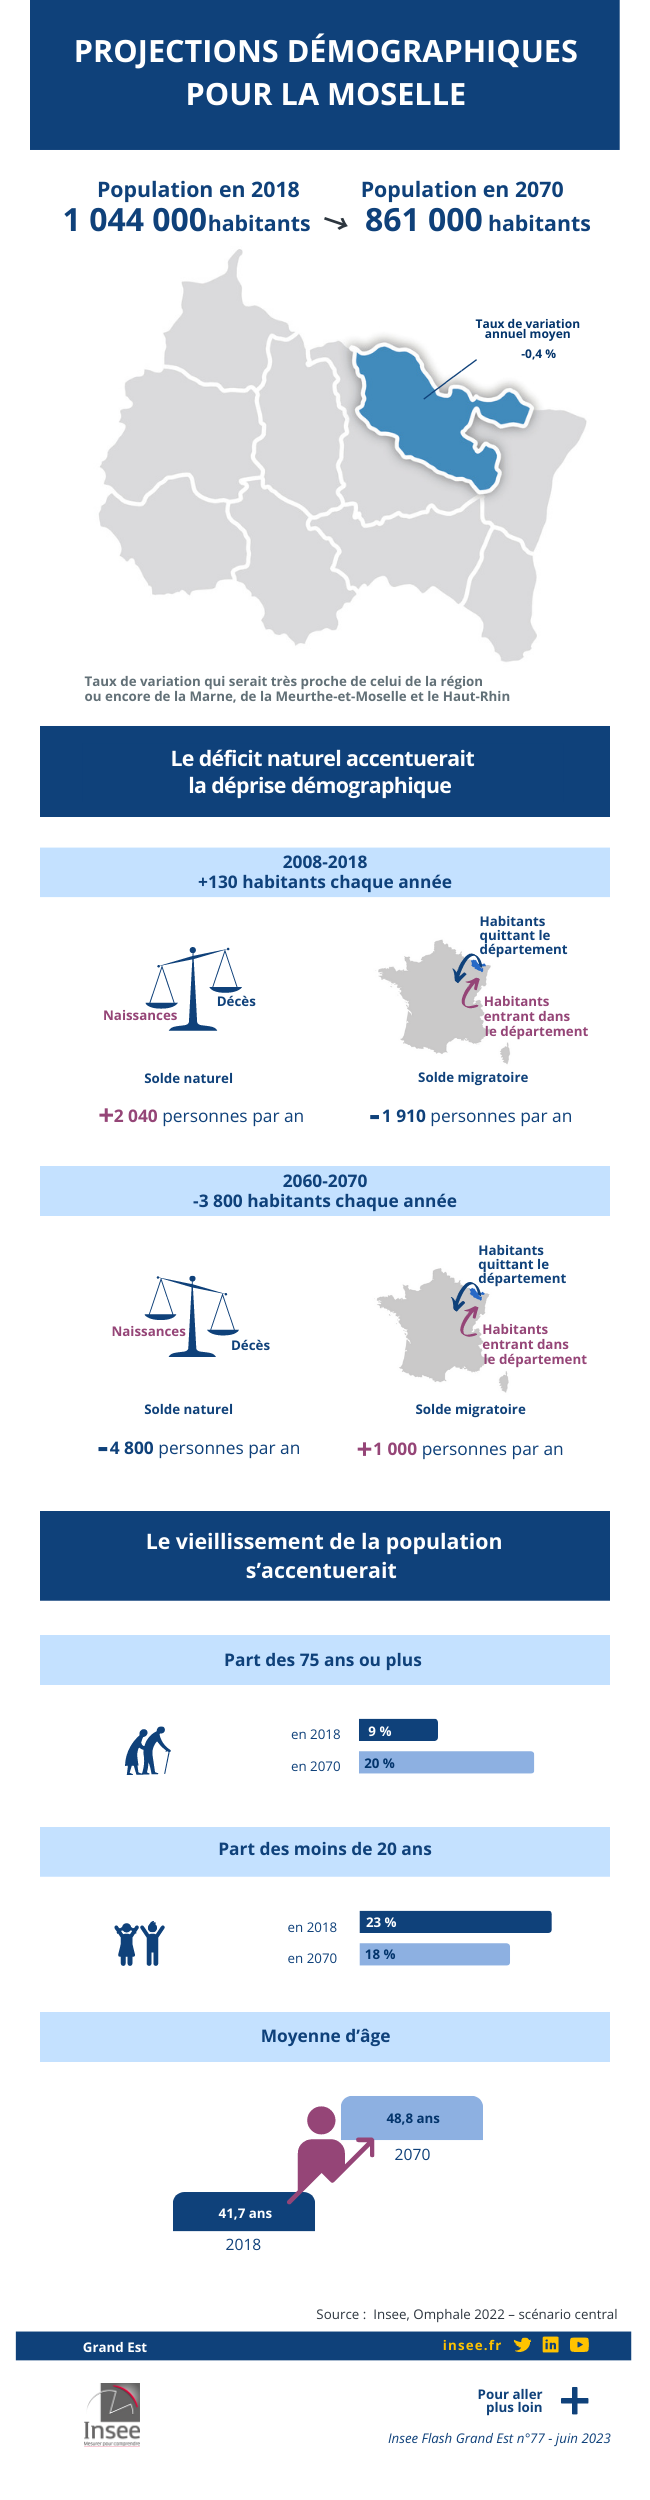 Infographie - Projections démographiques pour la Moselle